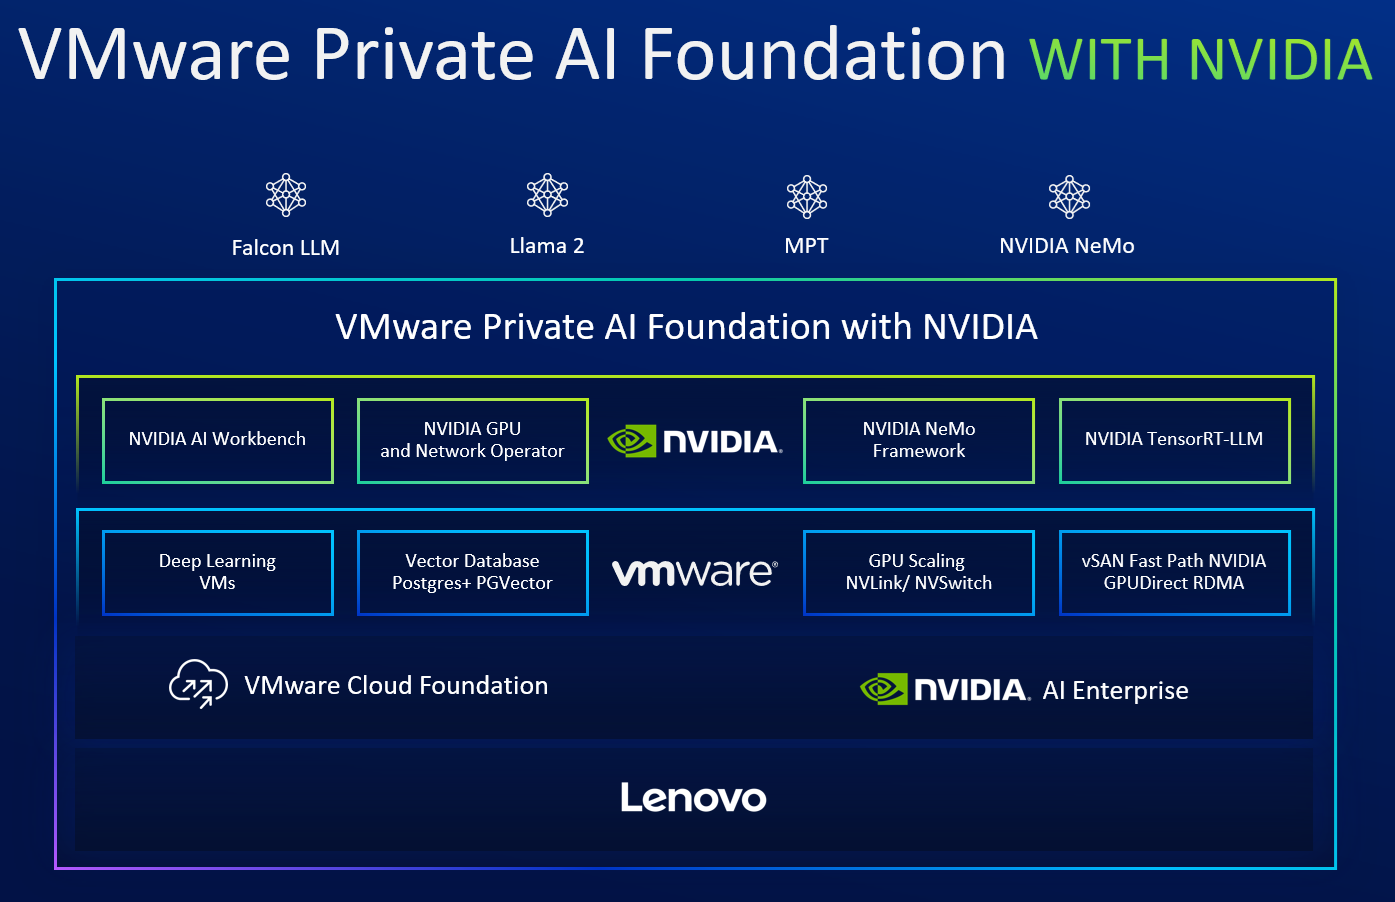 VMware Private AI Foundation with NVIDIA building blocks